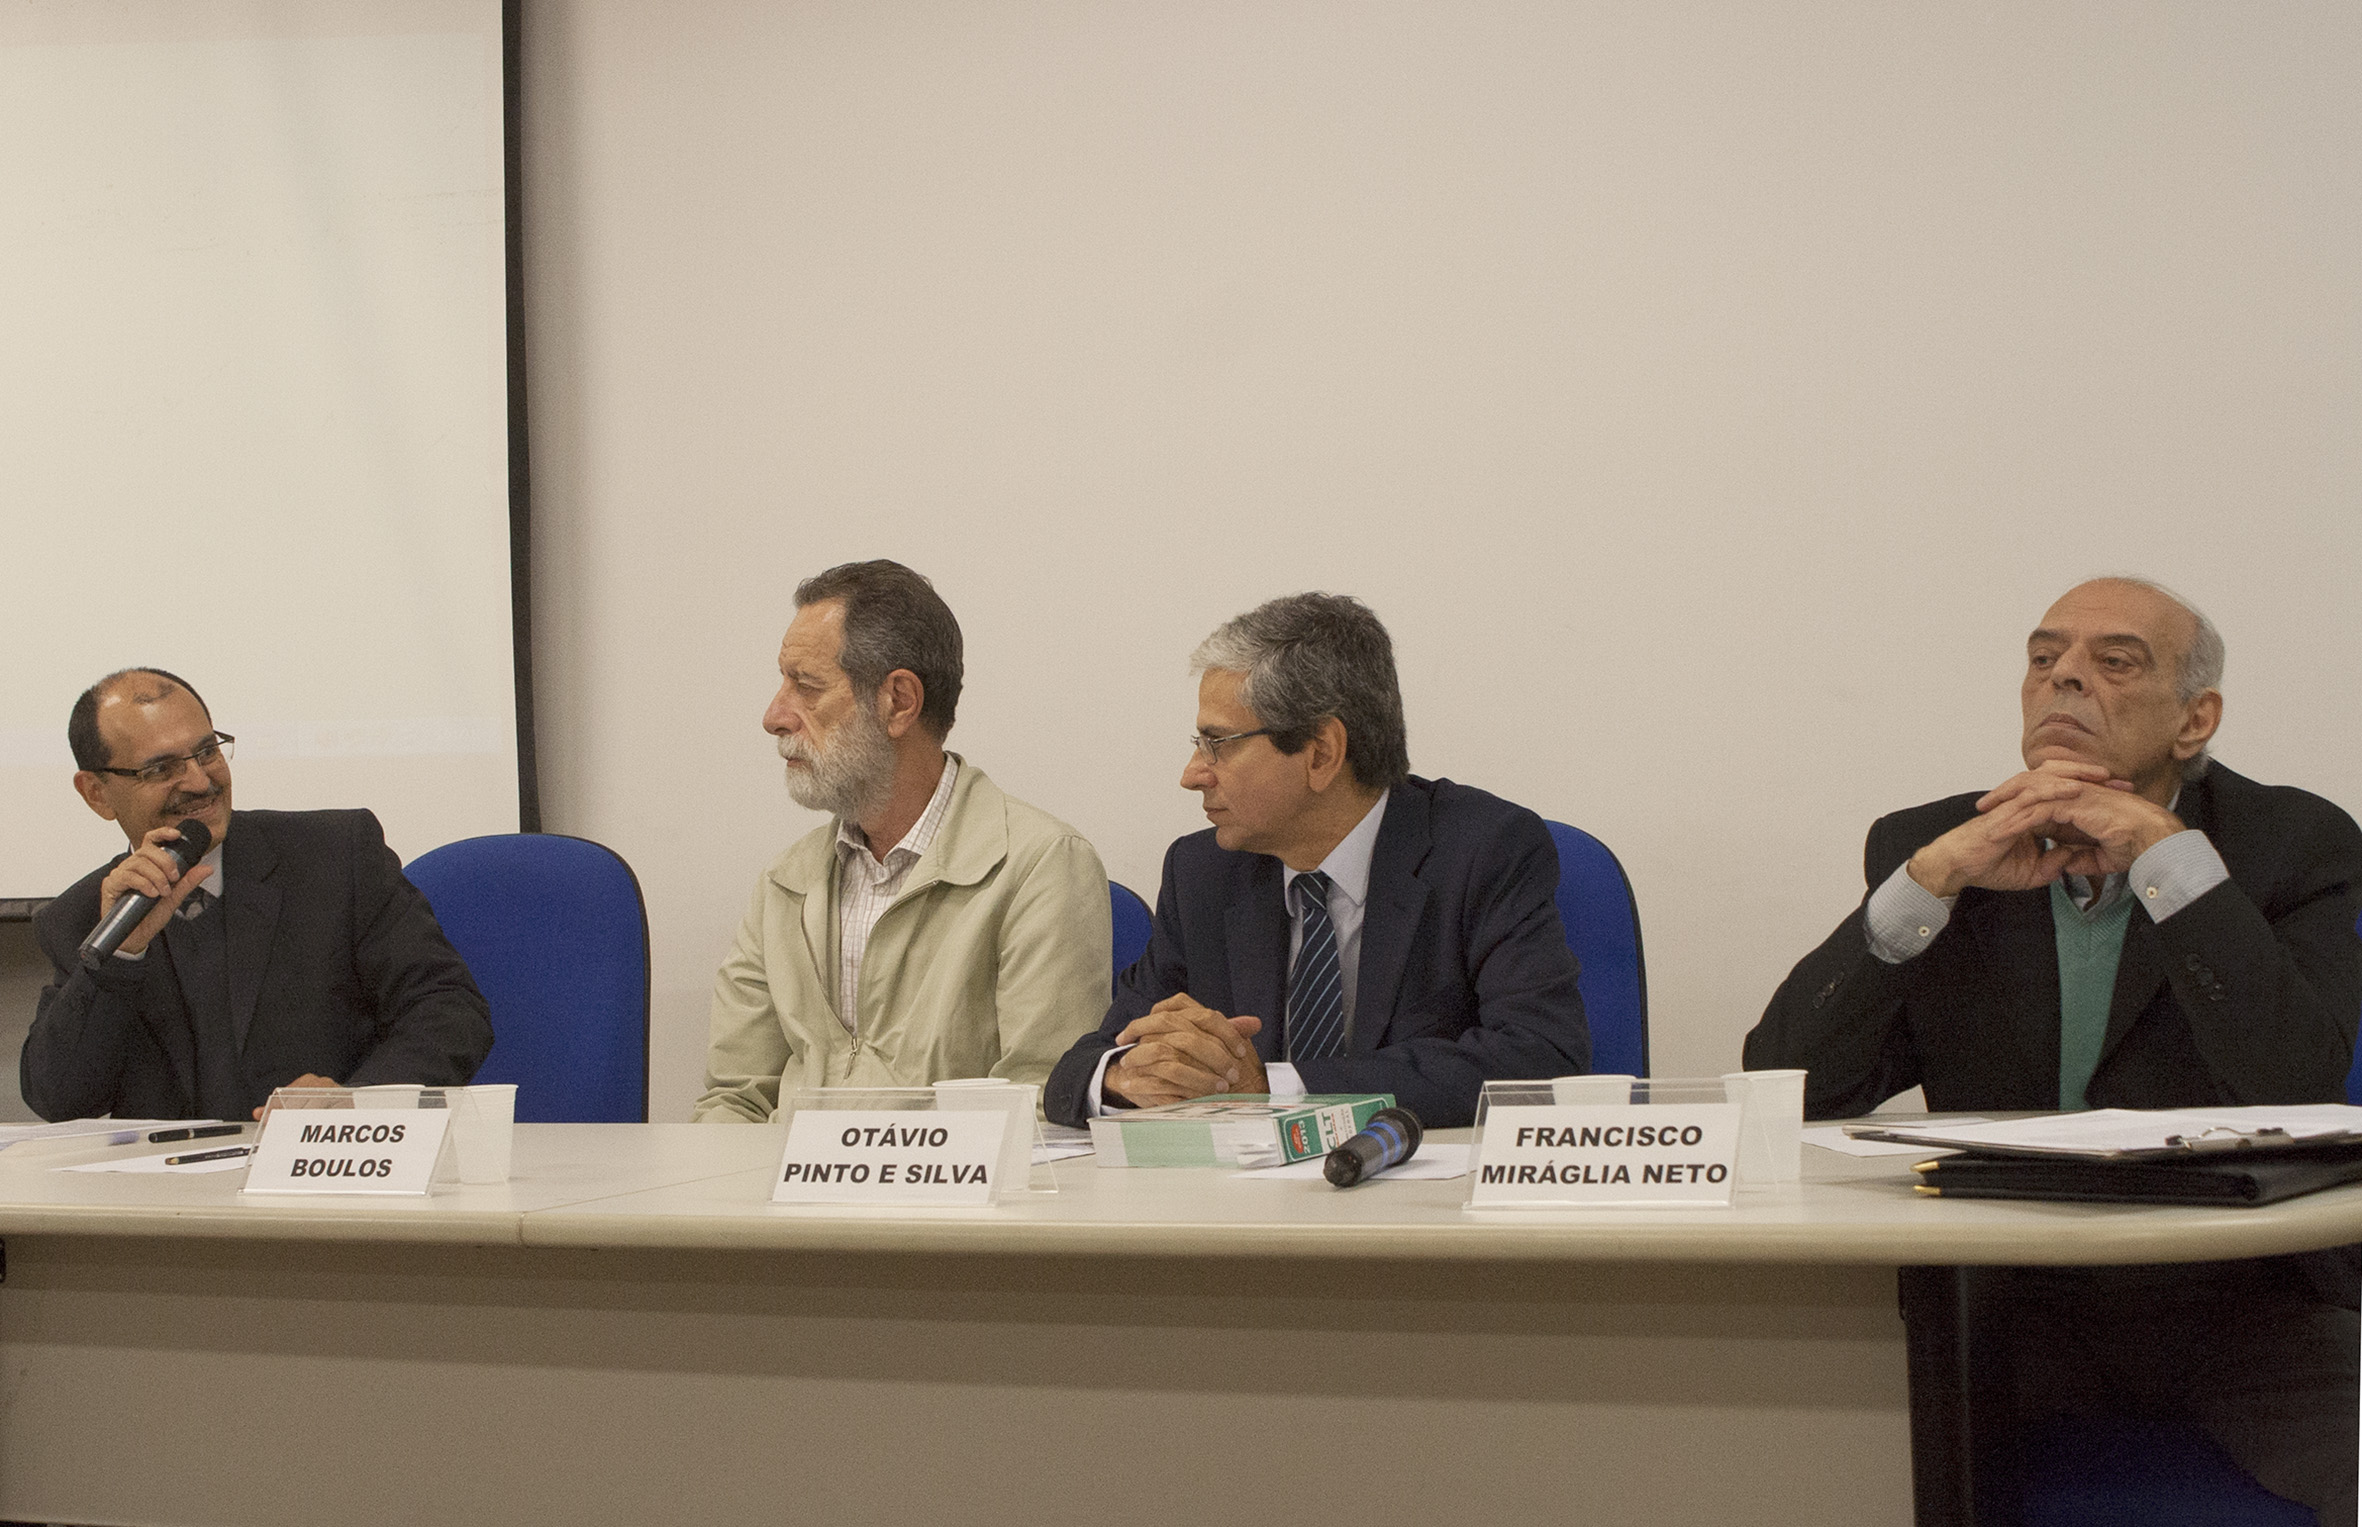 Salvador Ferreira da Silva, Marcos Boulos, Otávio Pinto e Silva e Francisco Miráglia Neto